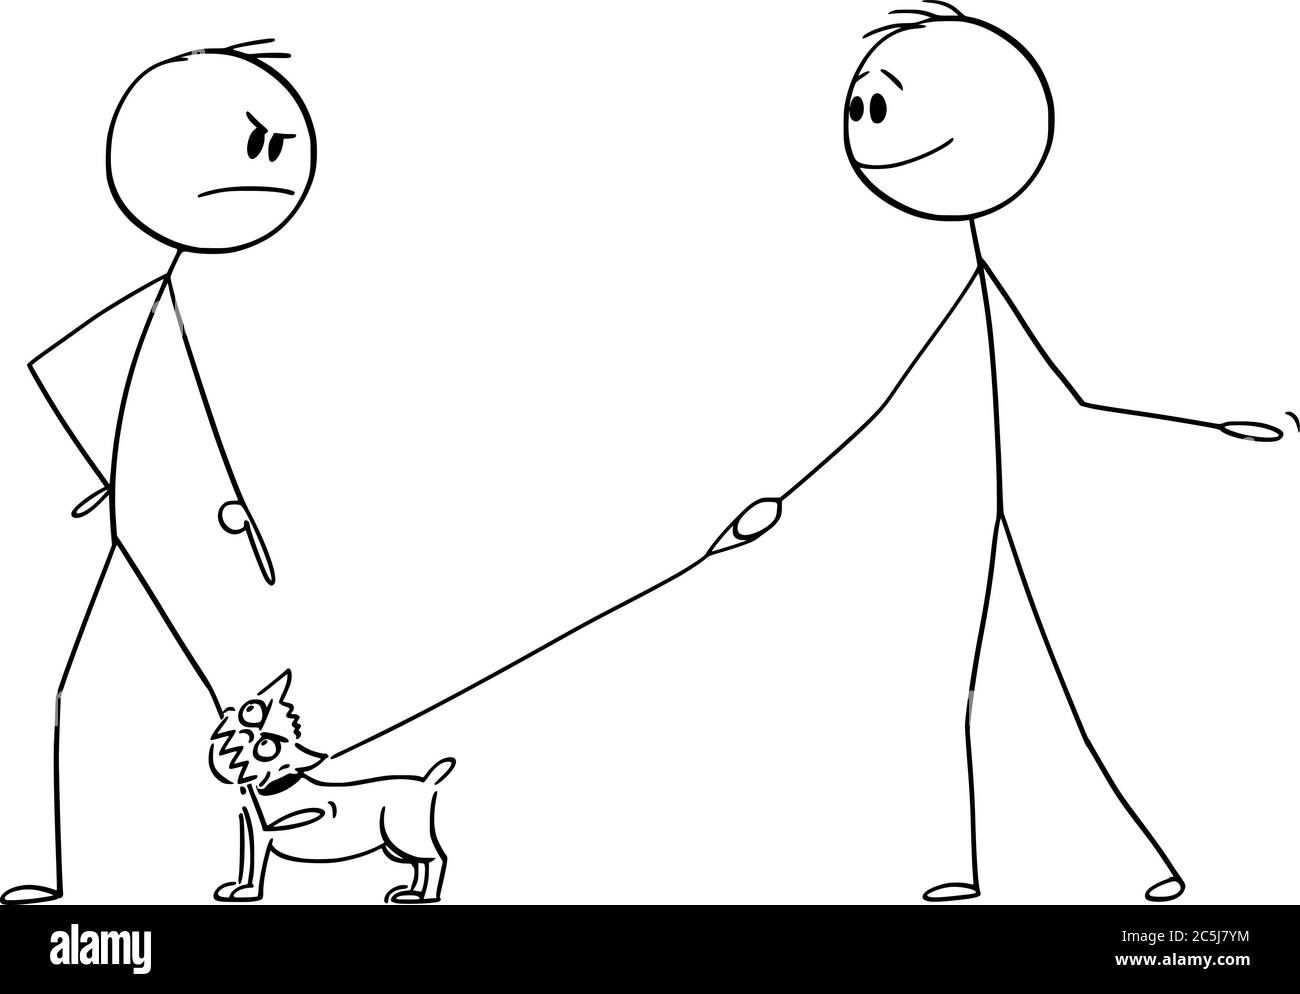 Figura vettoriale del cartone disegno illustrazione concettuale di uomo arrabbiato con il piccolo cane aggressivo o chihuahua al guinzaglio o piombo morso alla sua gamba. Il proprietario sorride. Illustrazione Vettoriale